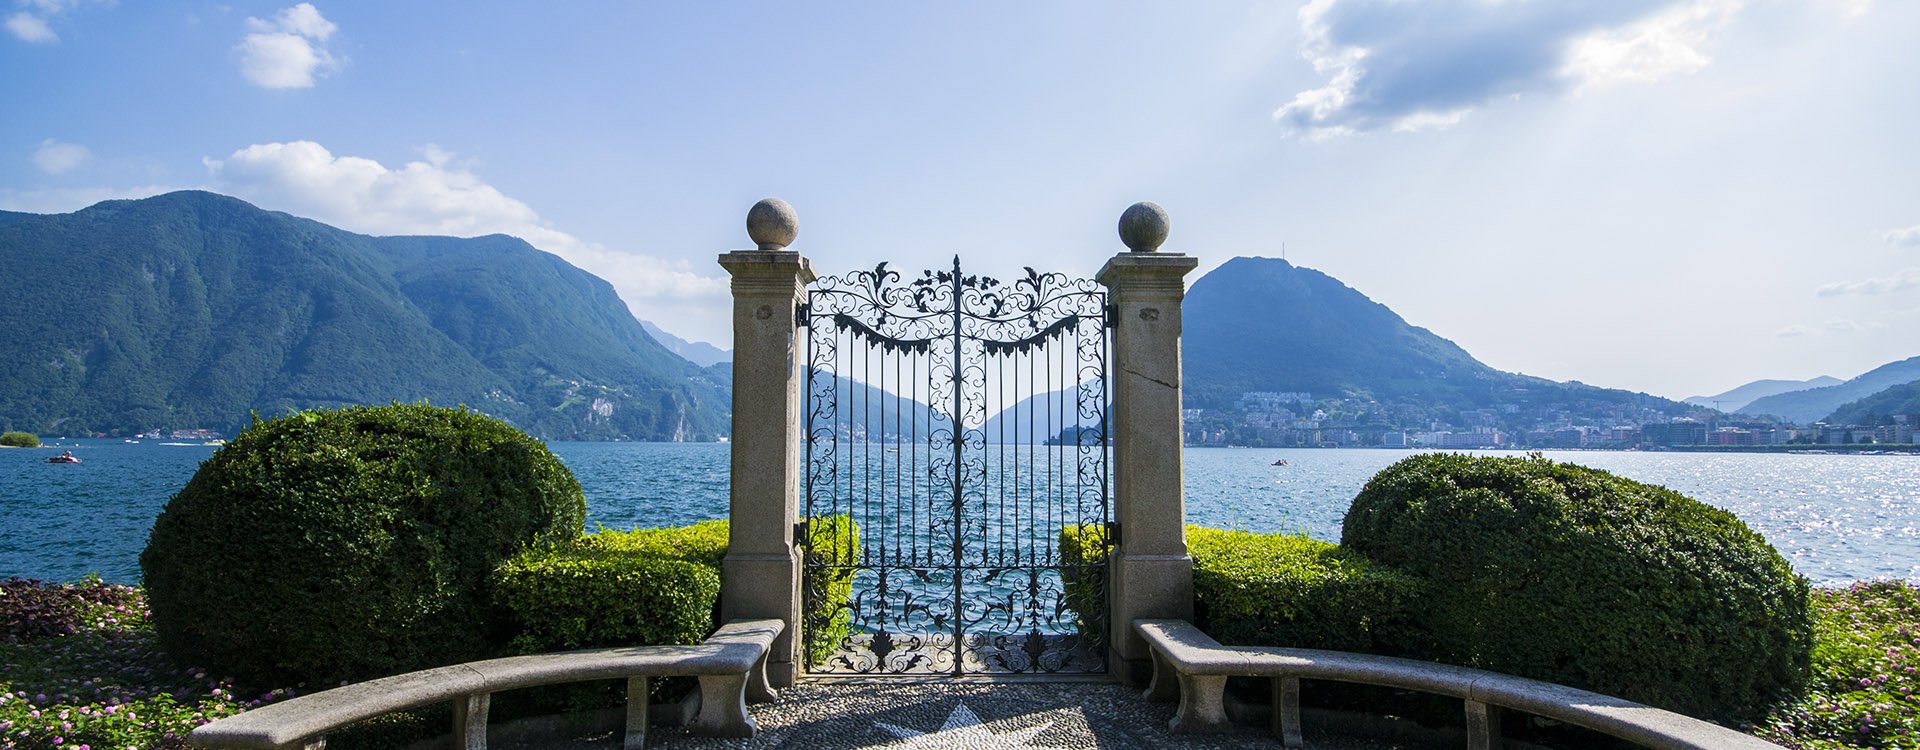 Gates on Lake Lugano - Lugano, Switzerland